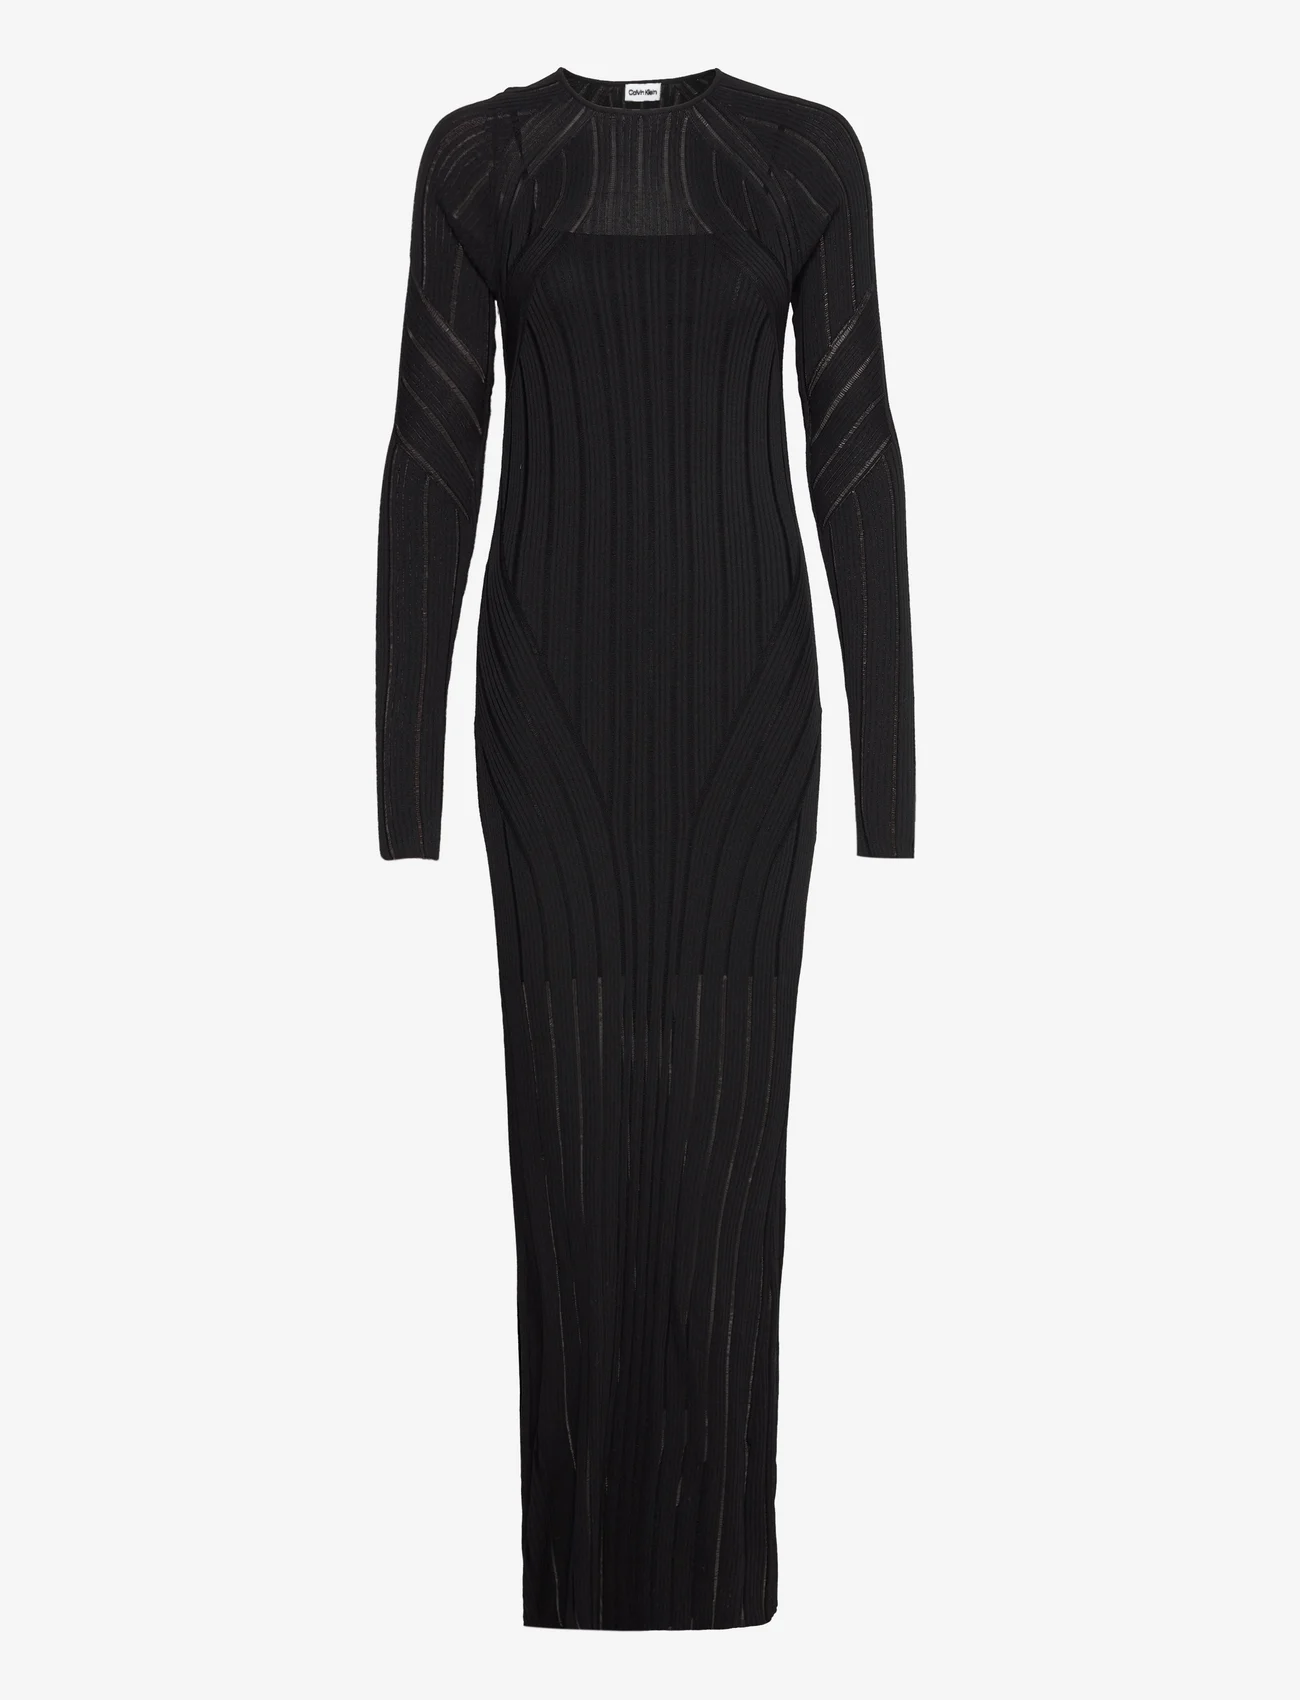 Calvin Klein - LADDERED RIB MAXI KNIT DRESS - tettsittende kjoler - ck black - 0